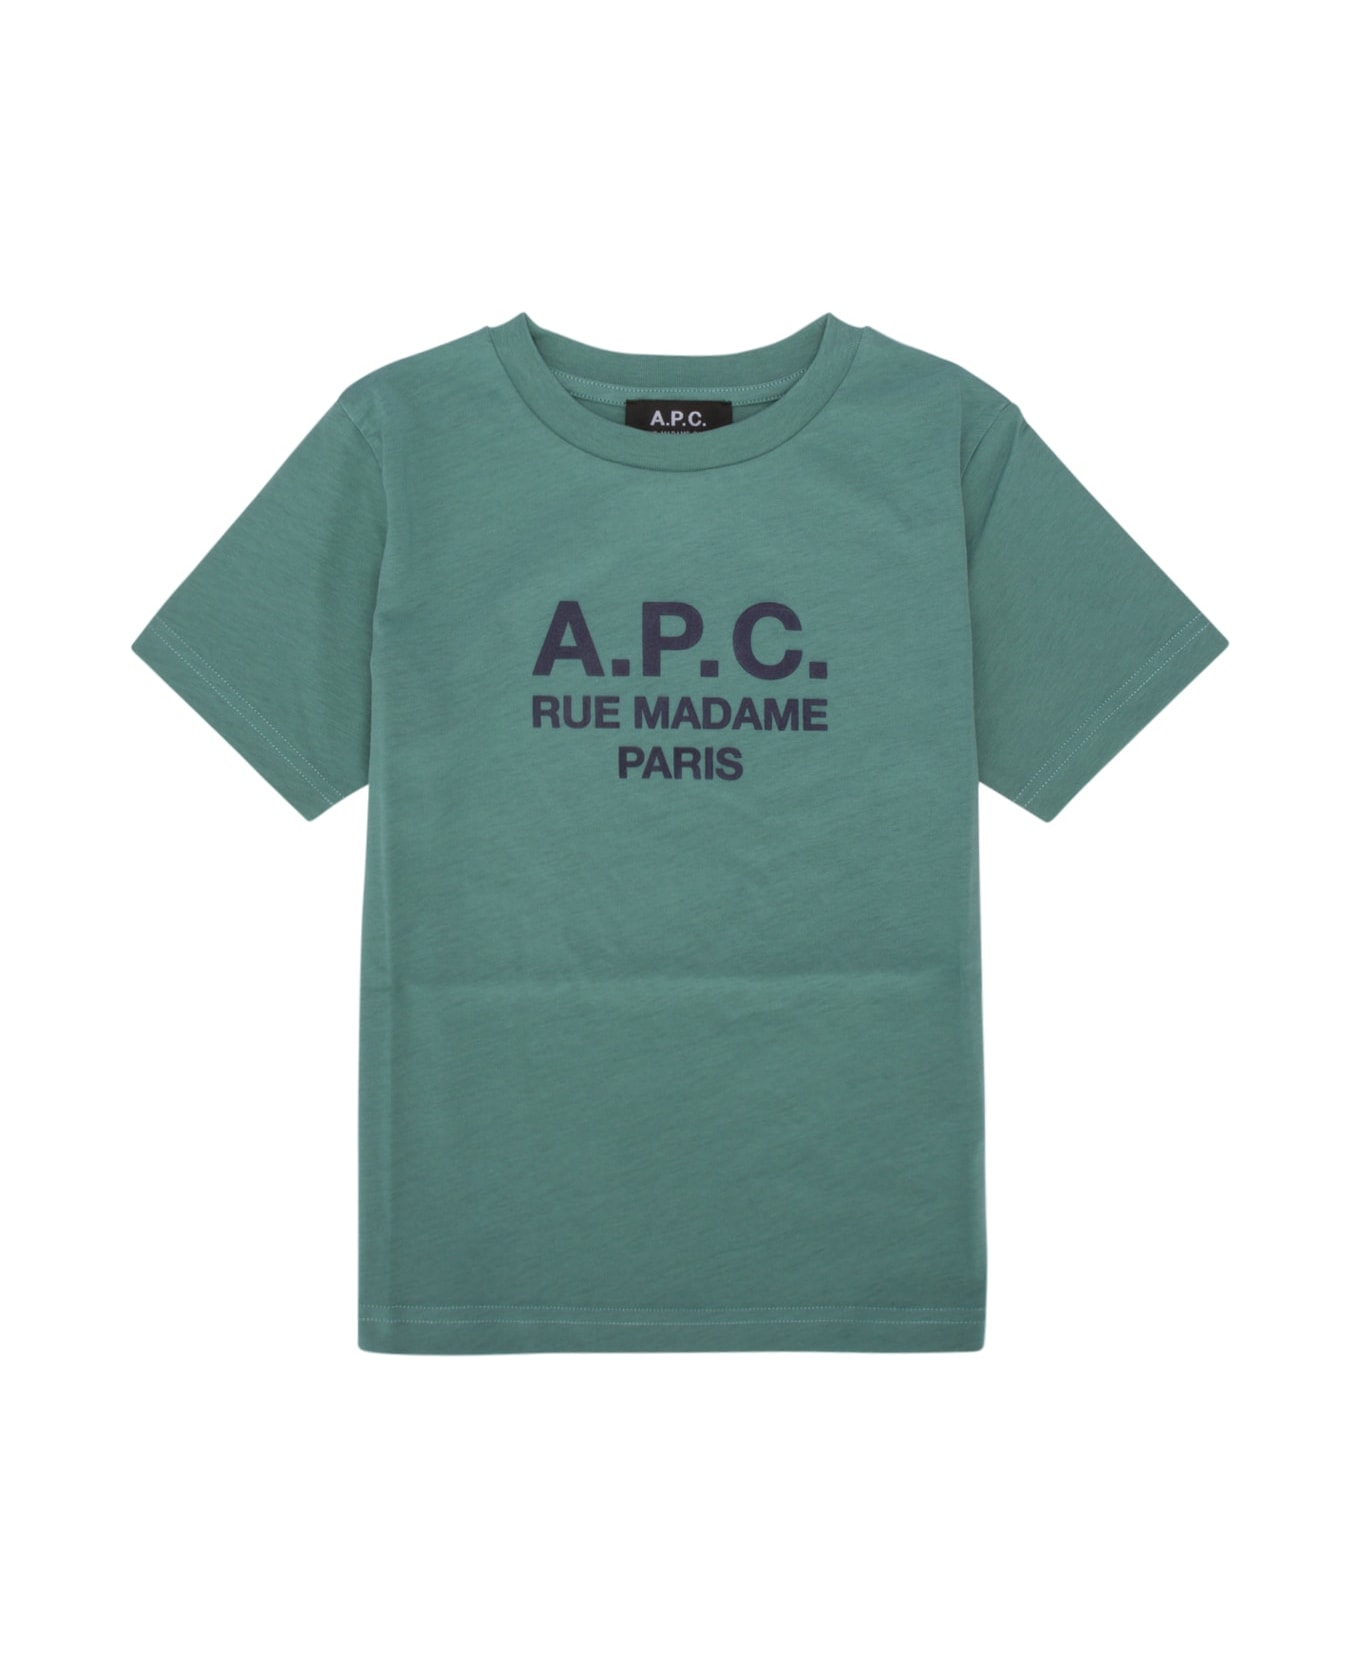 A.P.C. T-shirt - Grey